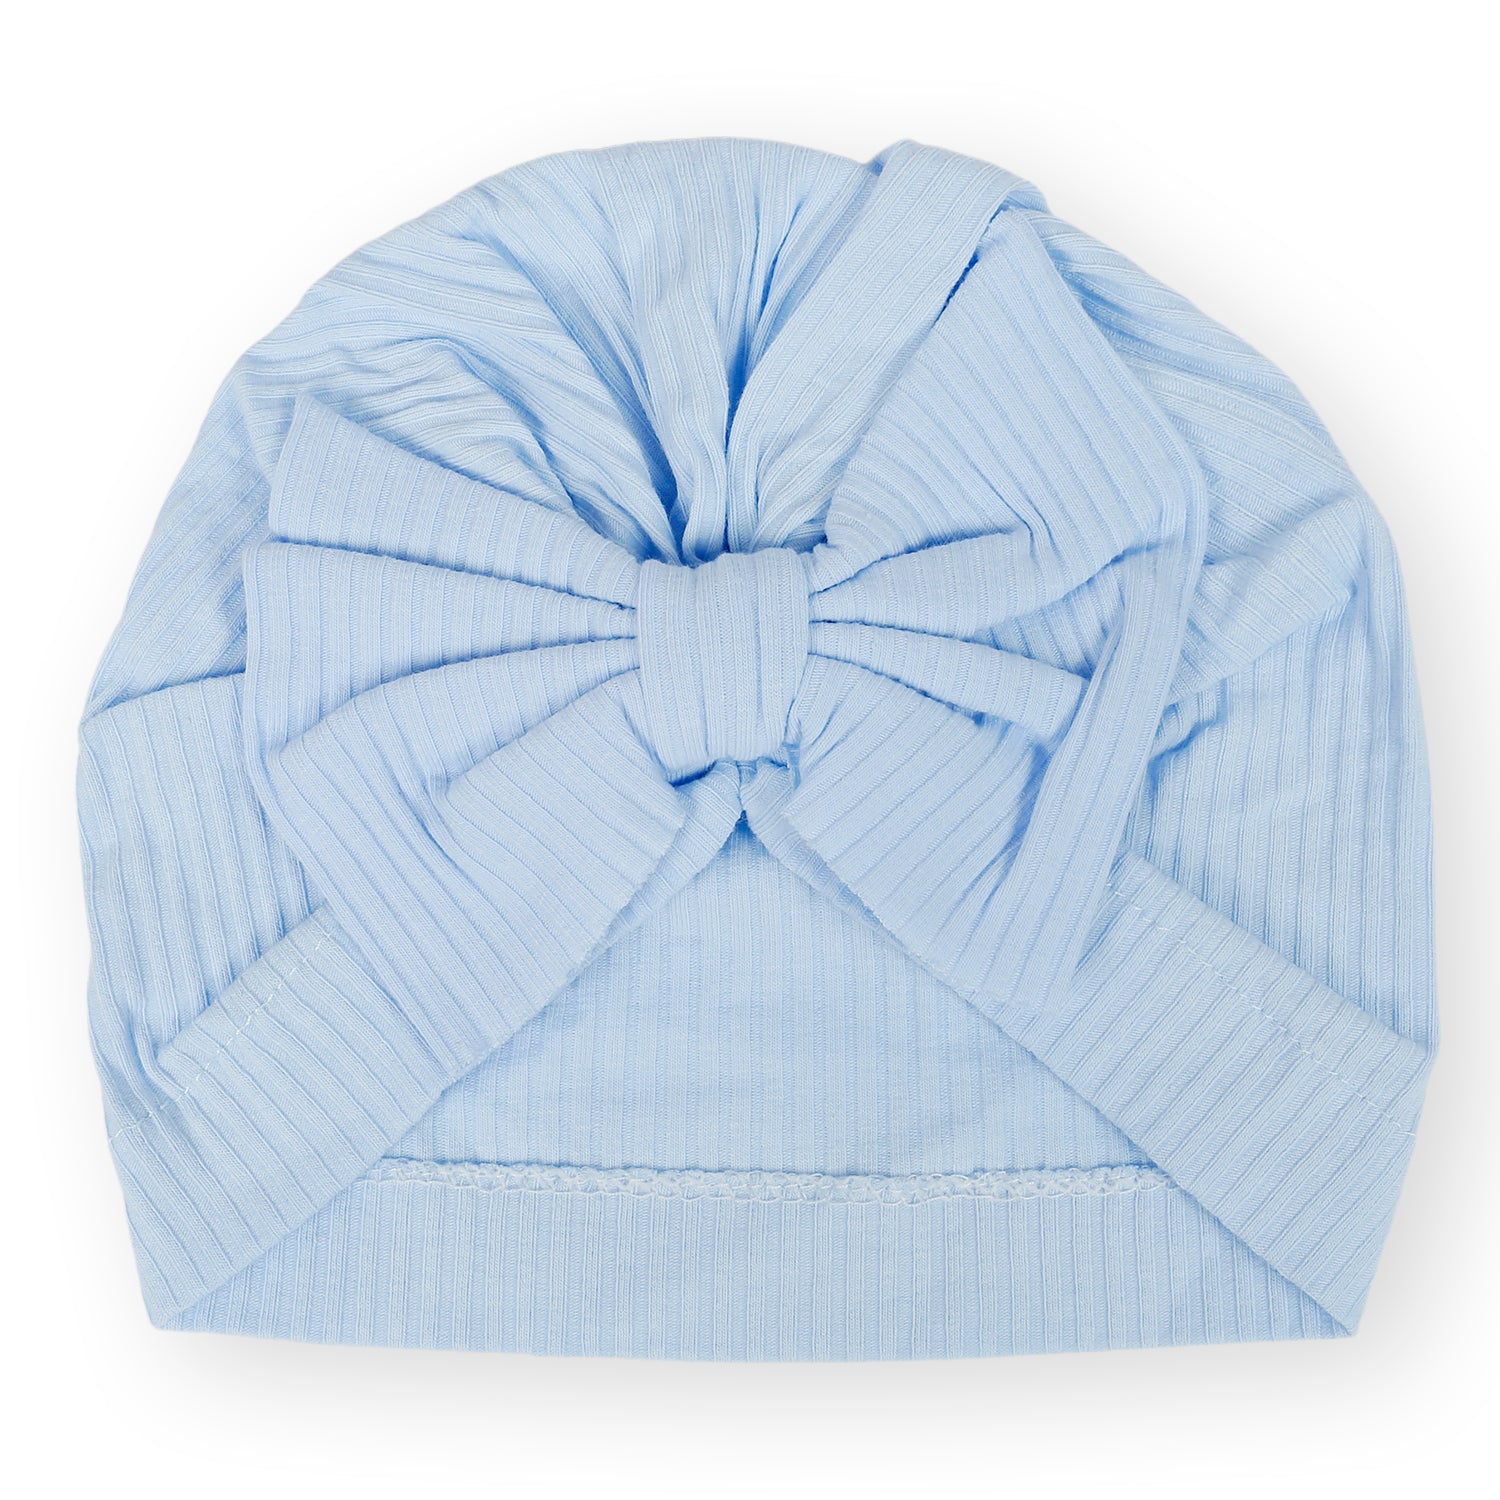 Bow Turban Cap - Blue